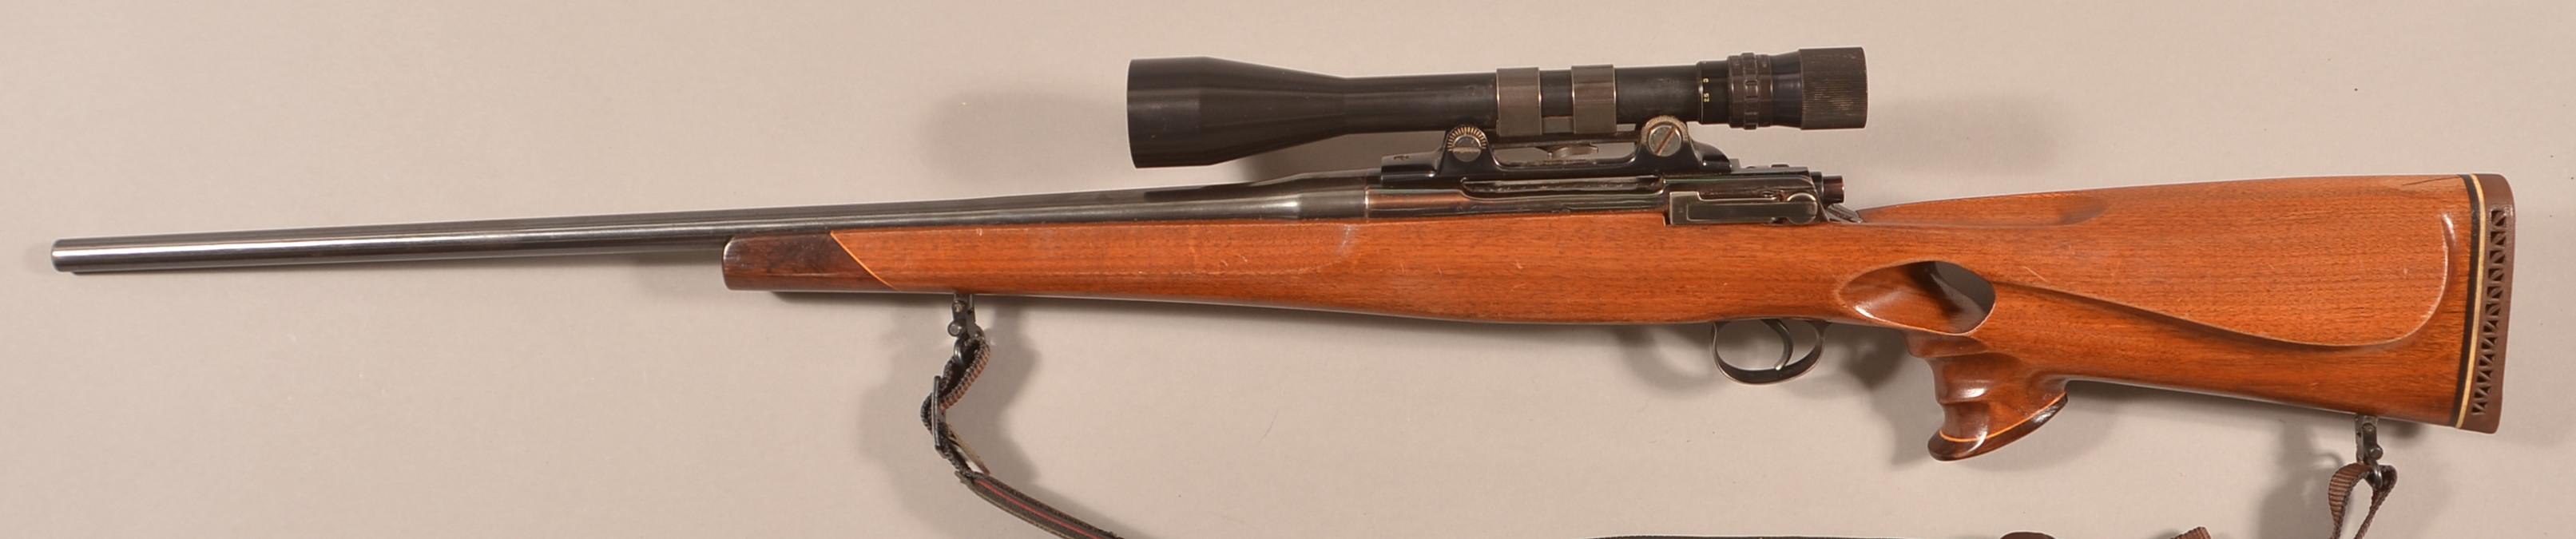 Custom-made Eddystone model 1917 30-06 rifle